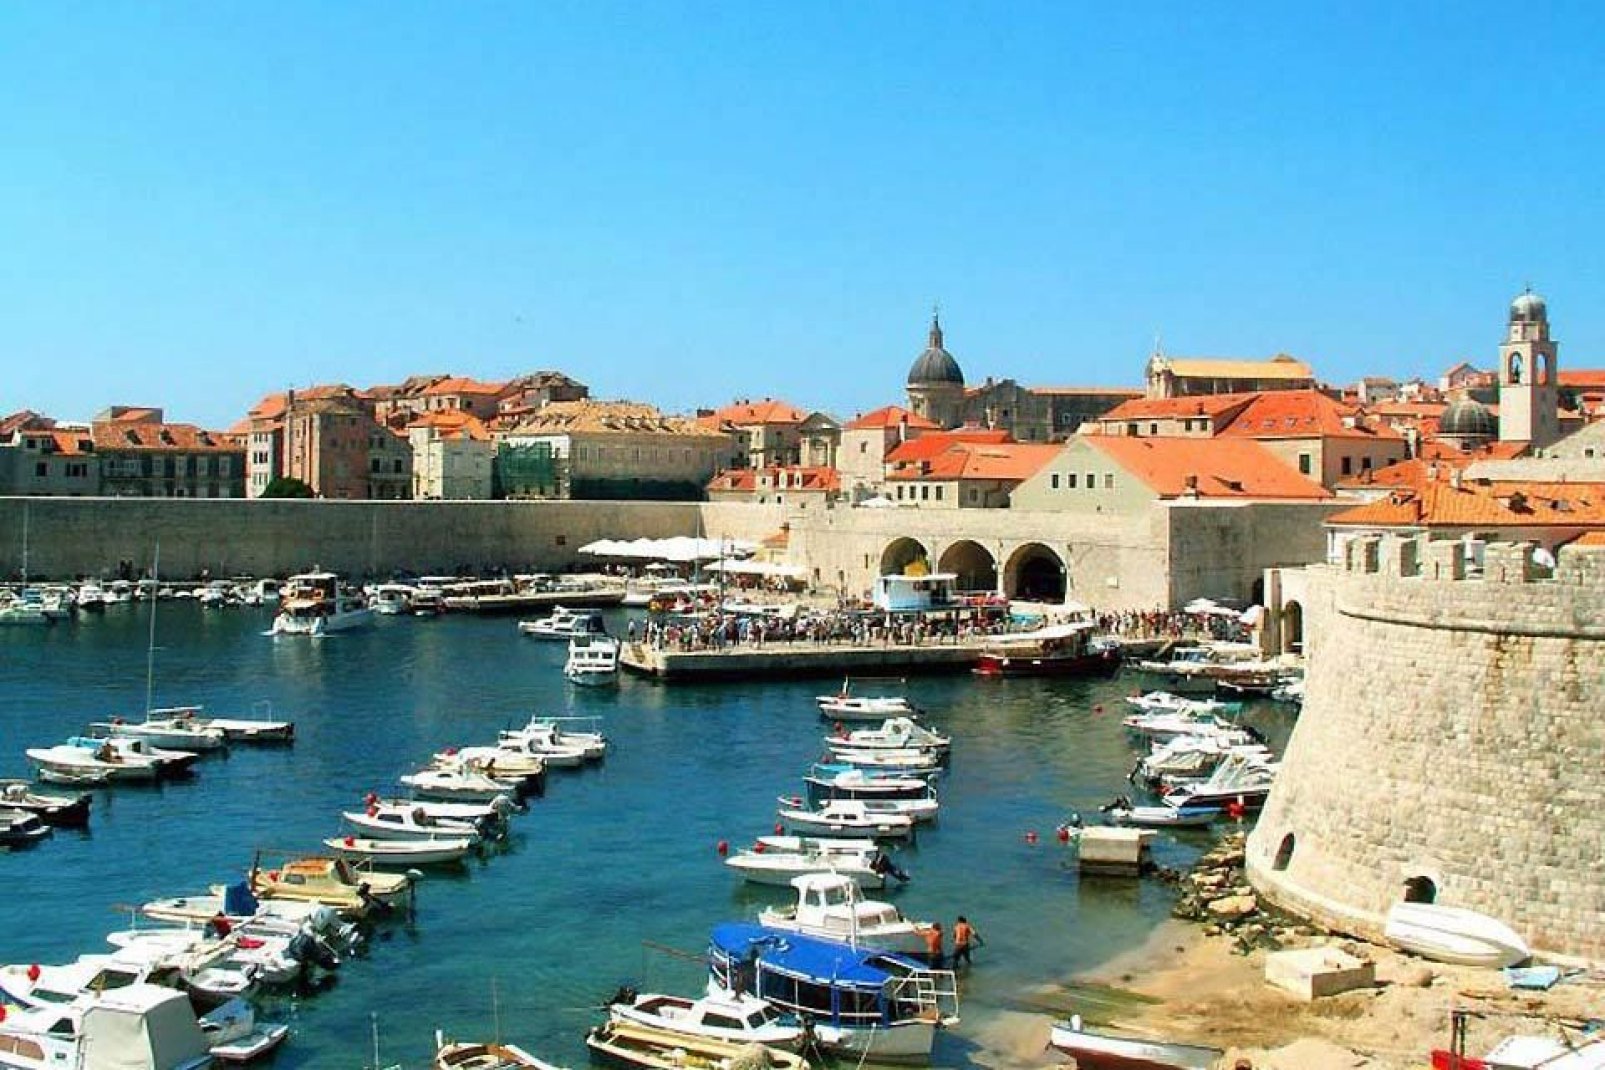 La città vecchia di Dubrovnik offre un gran bello sfondo alle barche ormeggiate nel porto